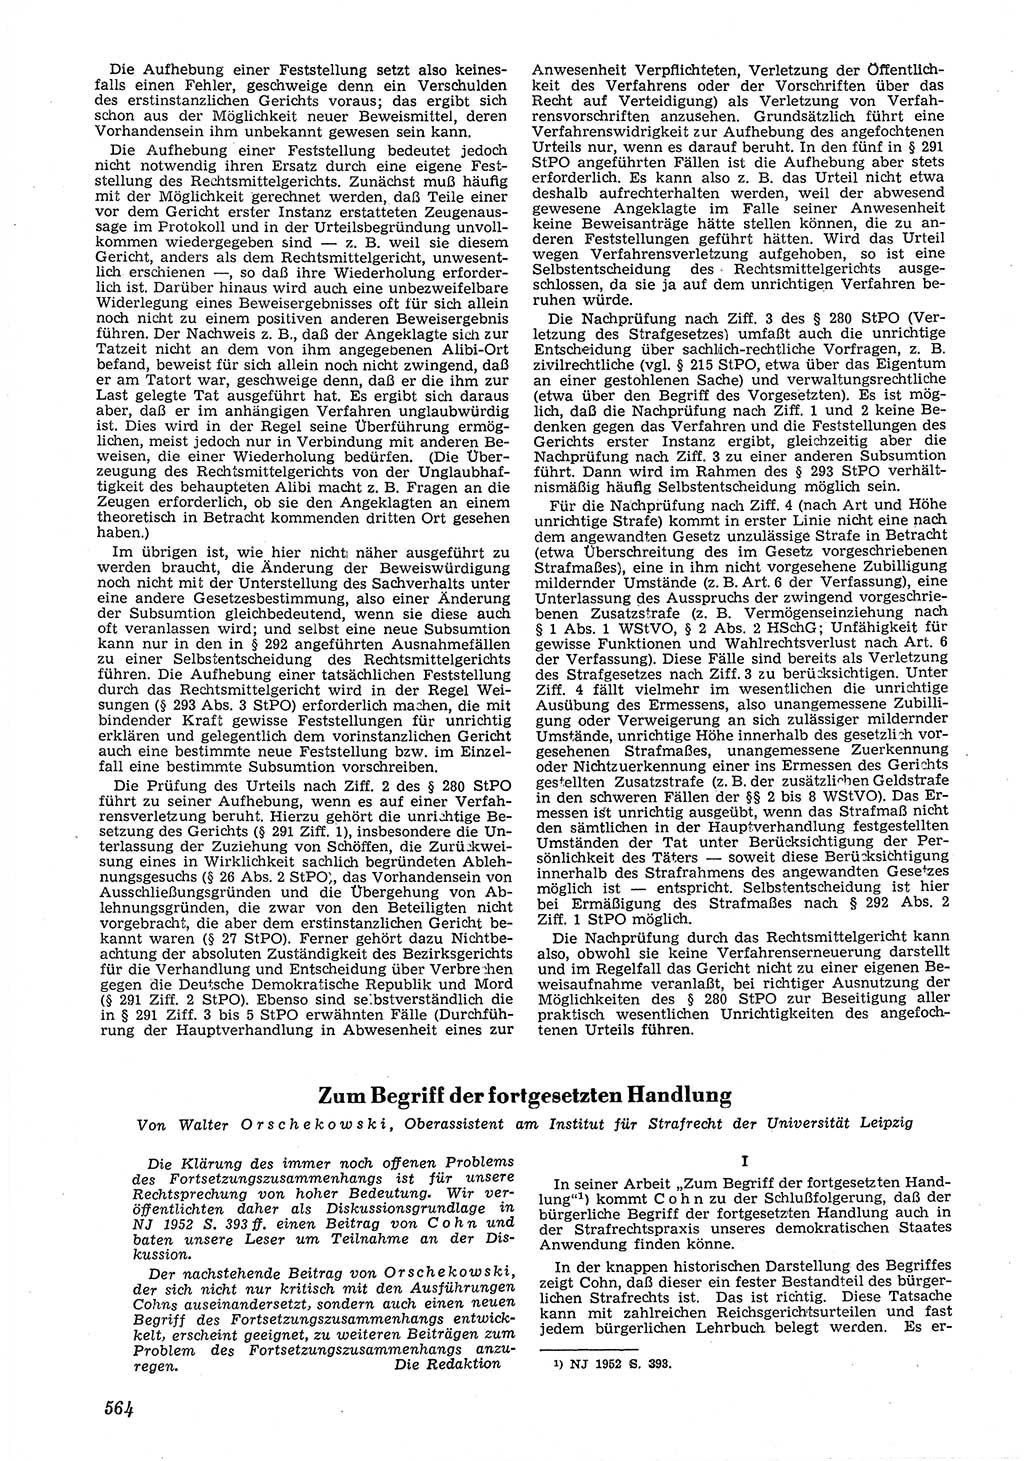 Neue Justiz (NJ), Zeitschrift für Recht und Rechtswissenschaft [Deutsche Demokratische Republik (DDR)], 6. Jahrgang 1952, Seite 564 (NJ DDR 1952, S. 564)